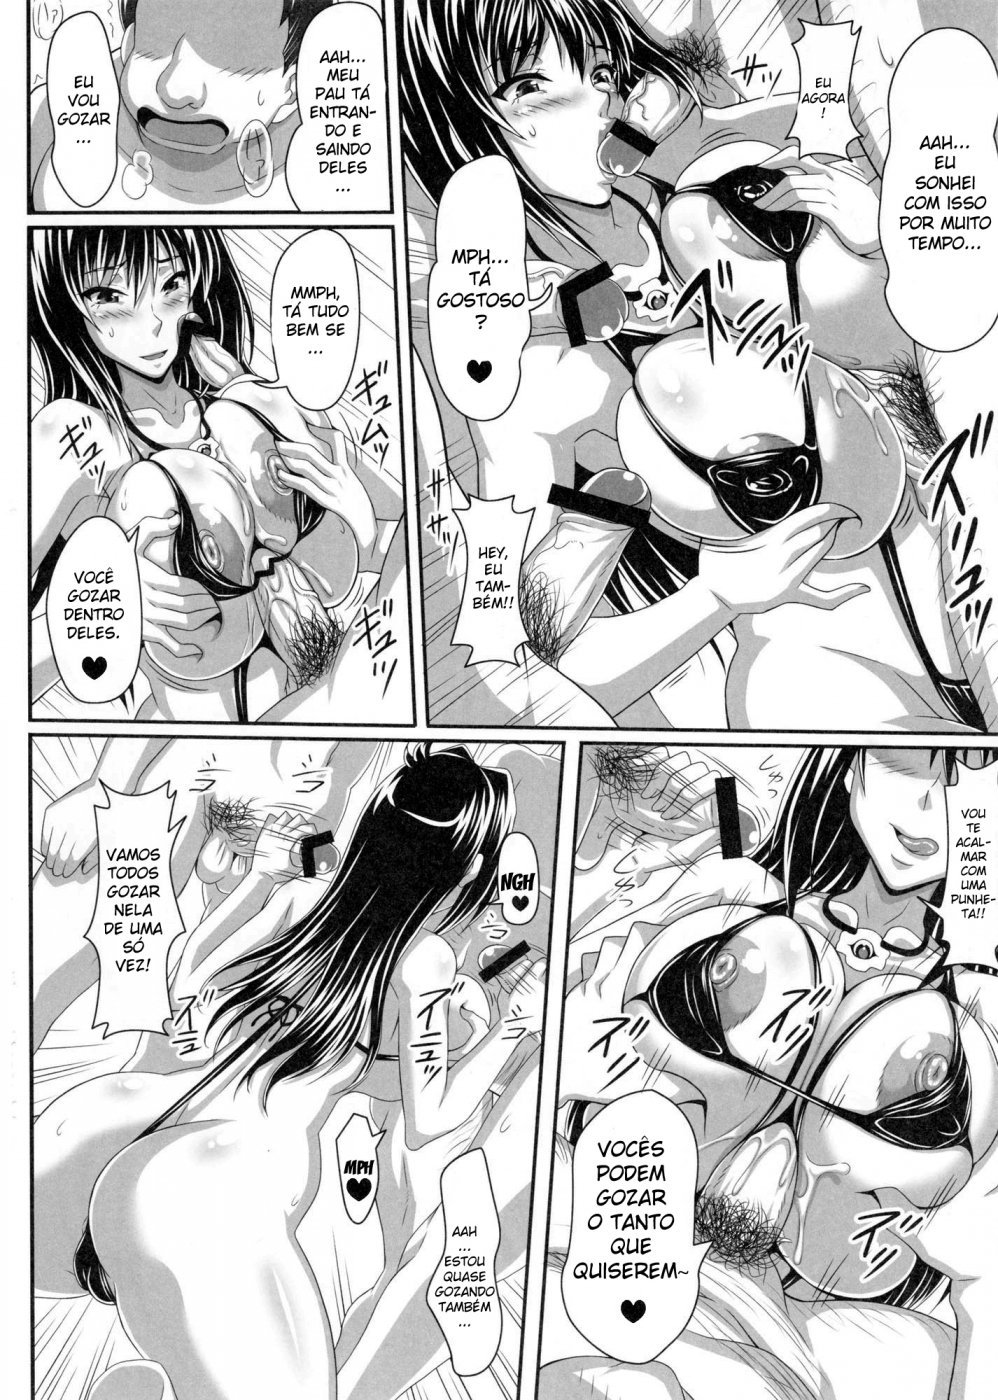 Sexo Hentai - A professora que ama rola!